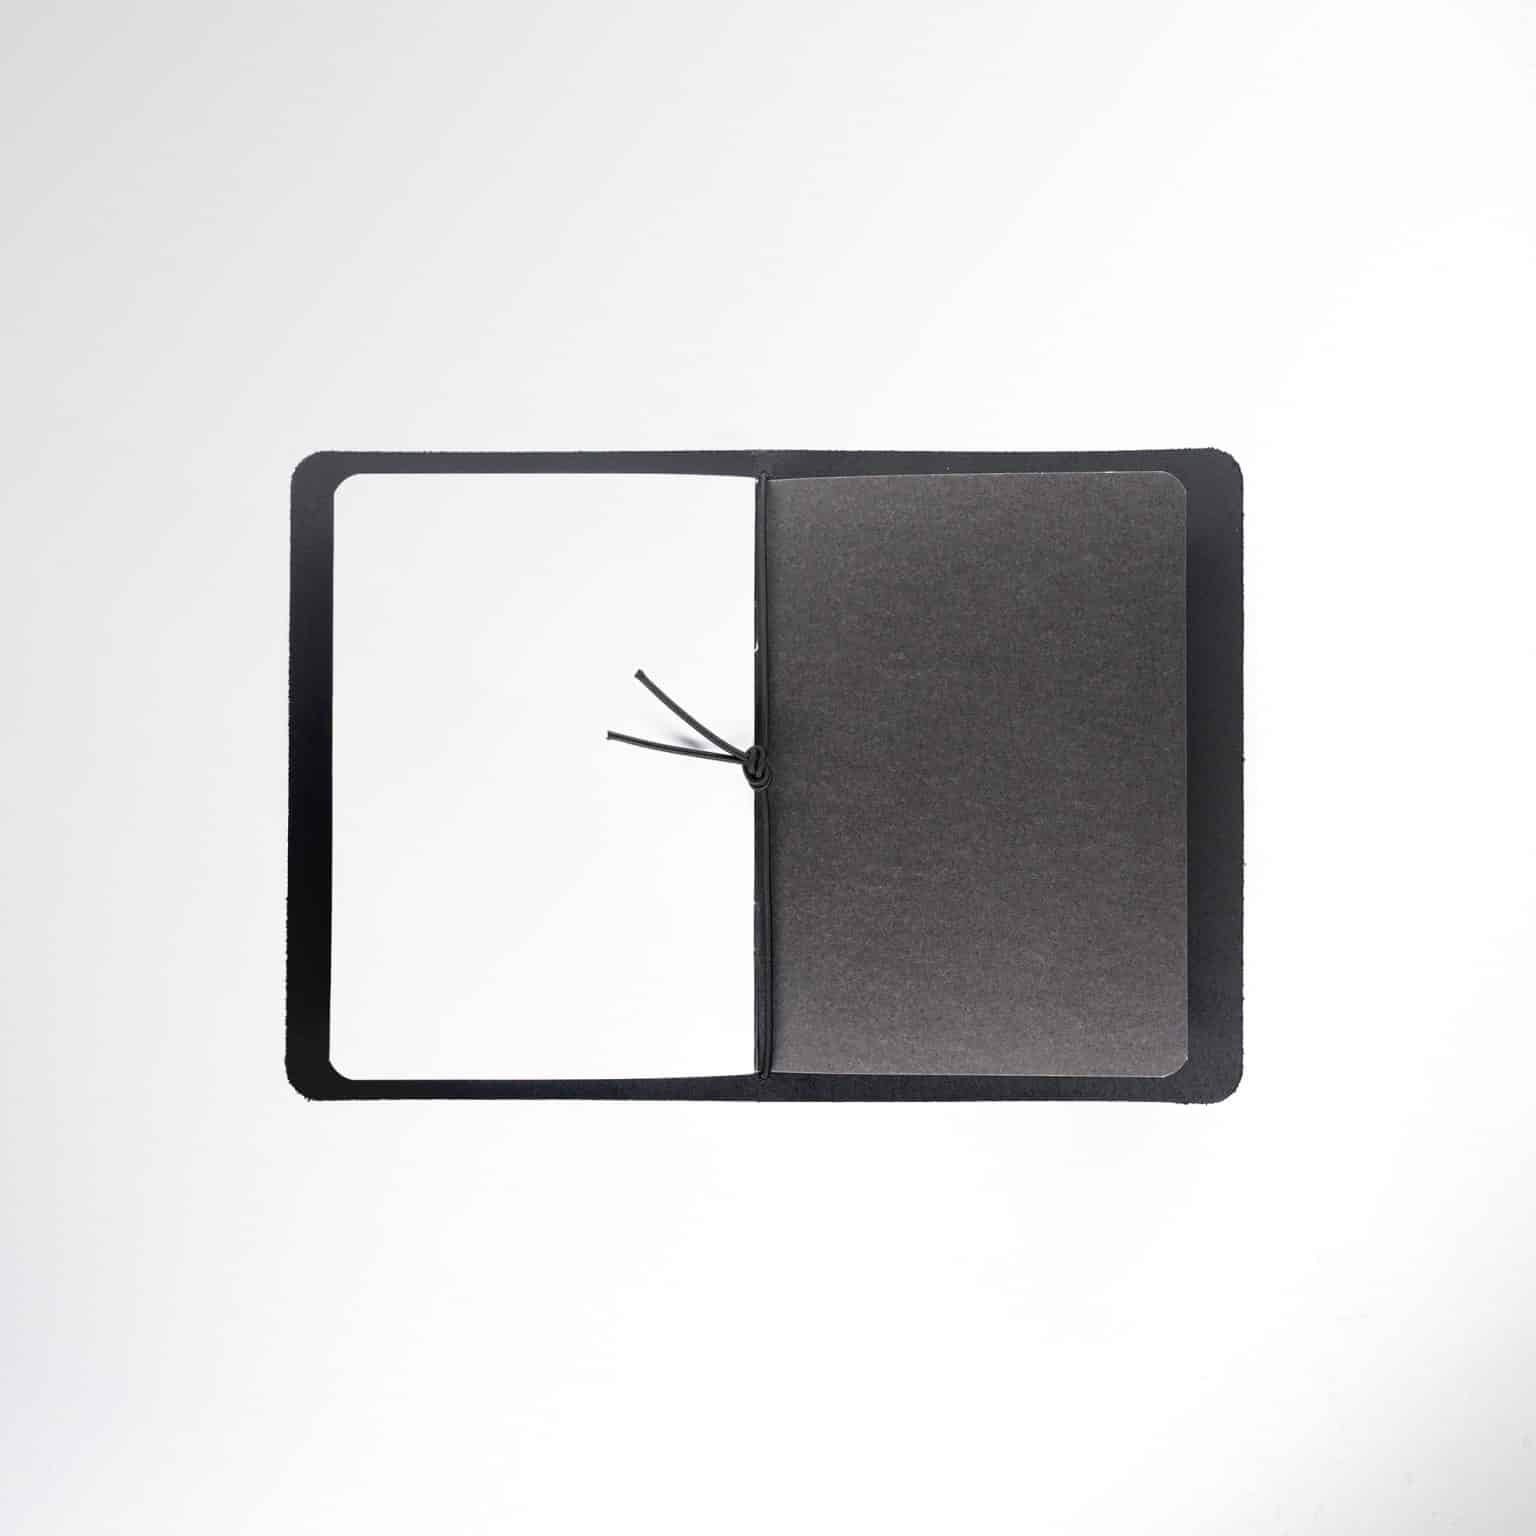 Minimalist wallet with efficient design